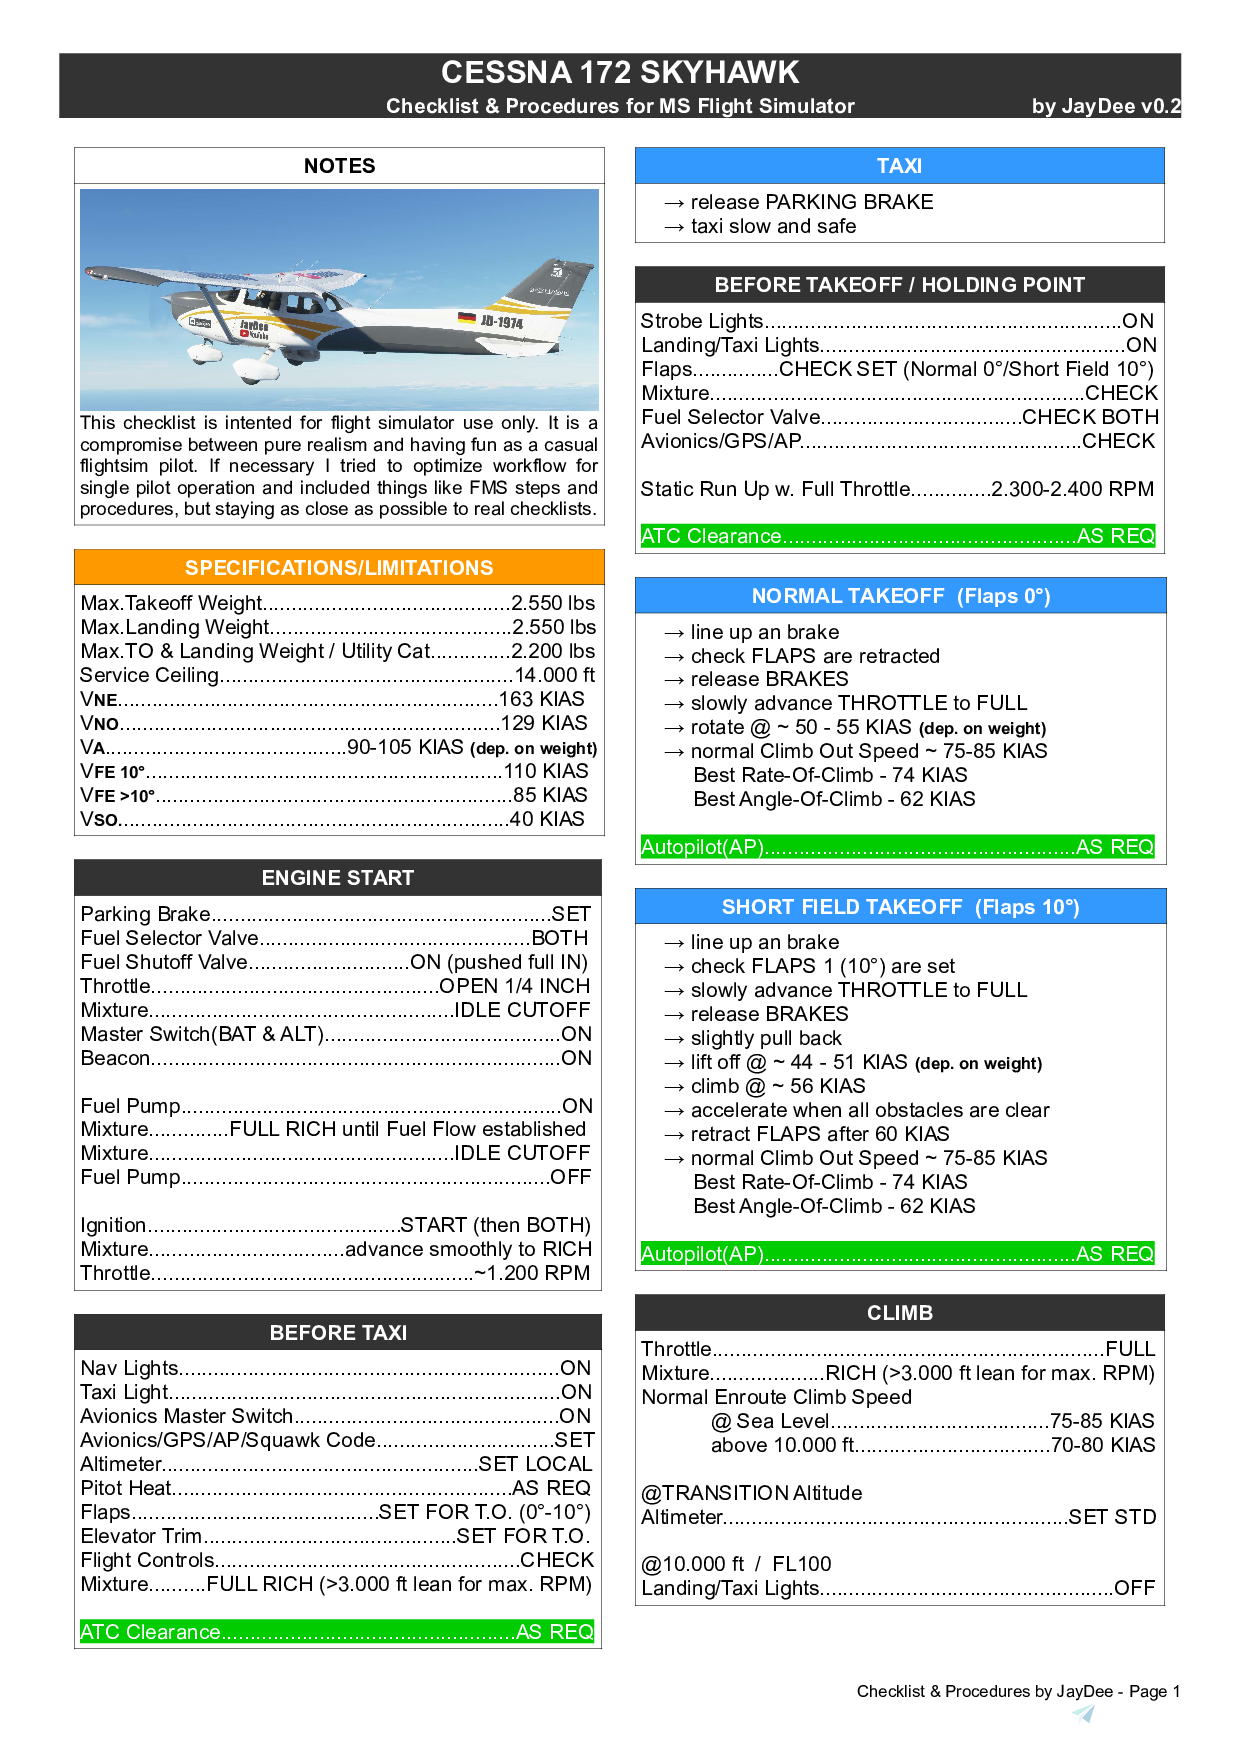 pre flight checklist